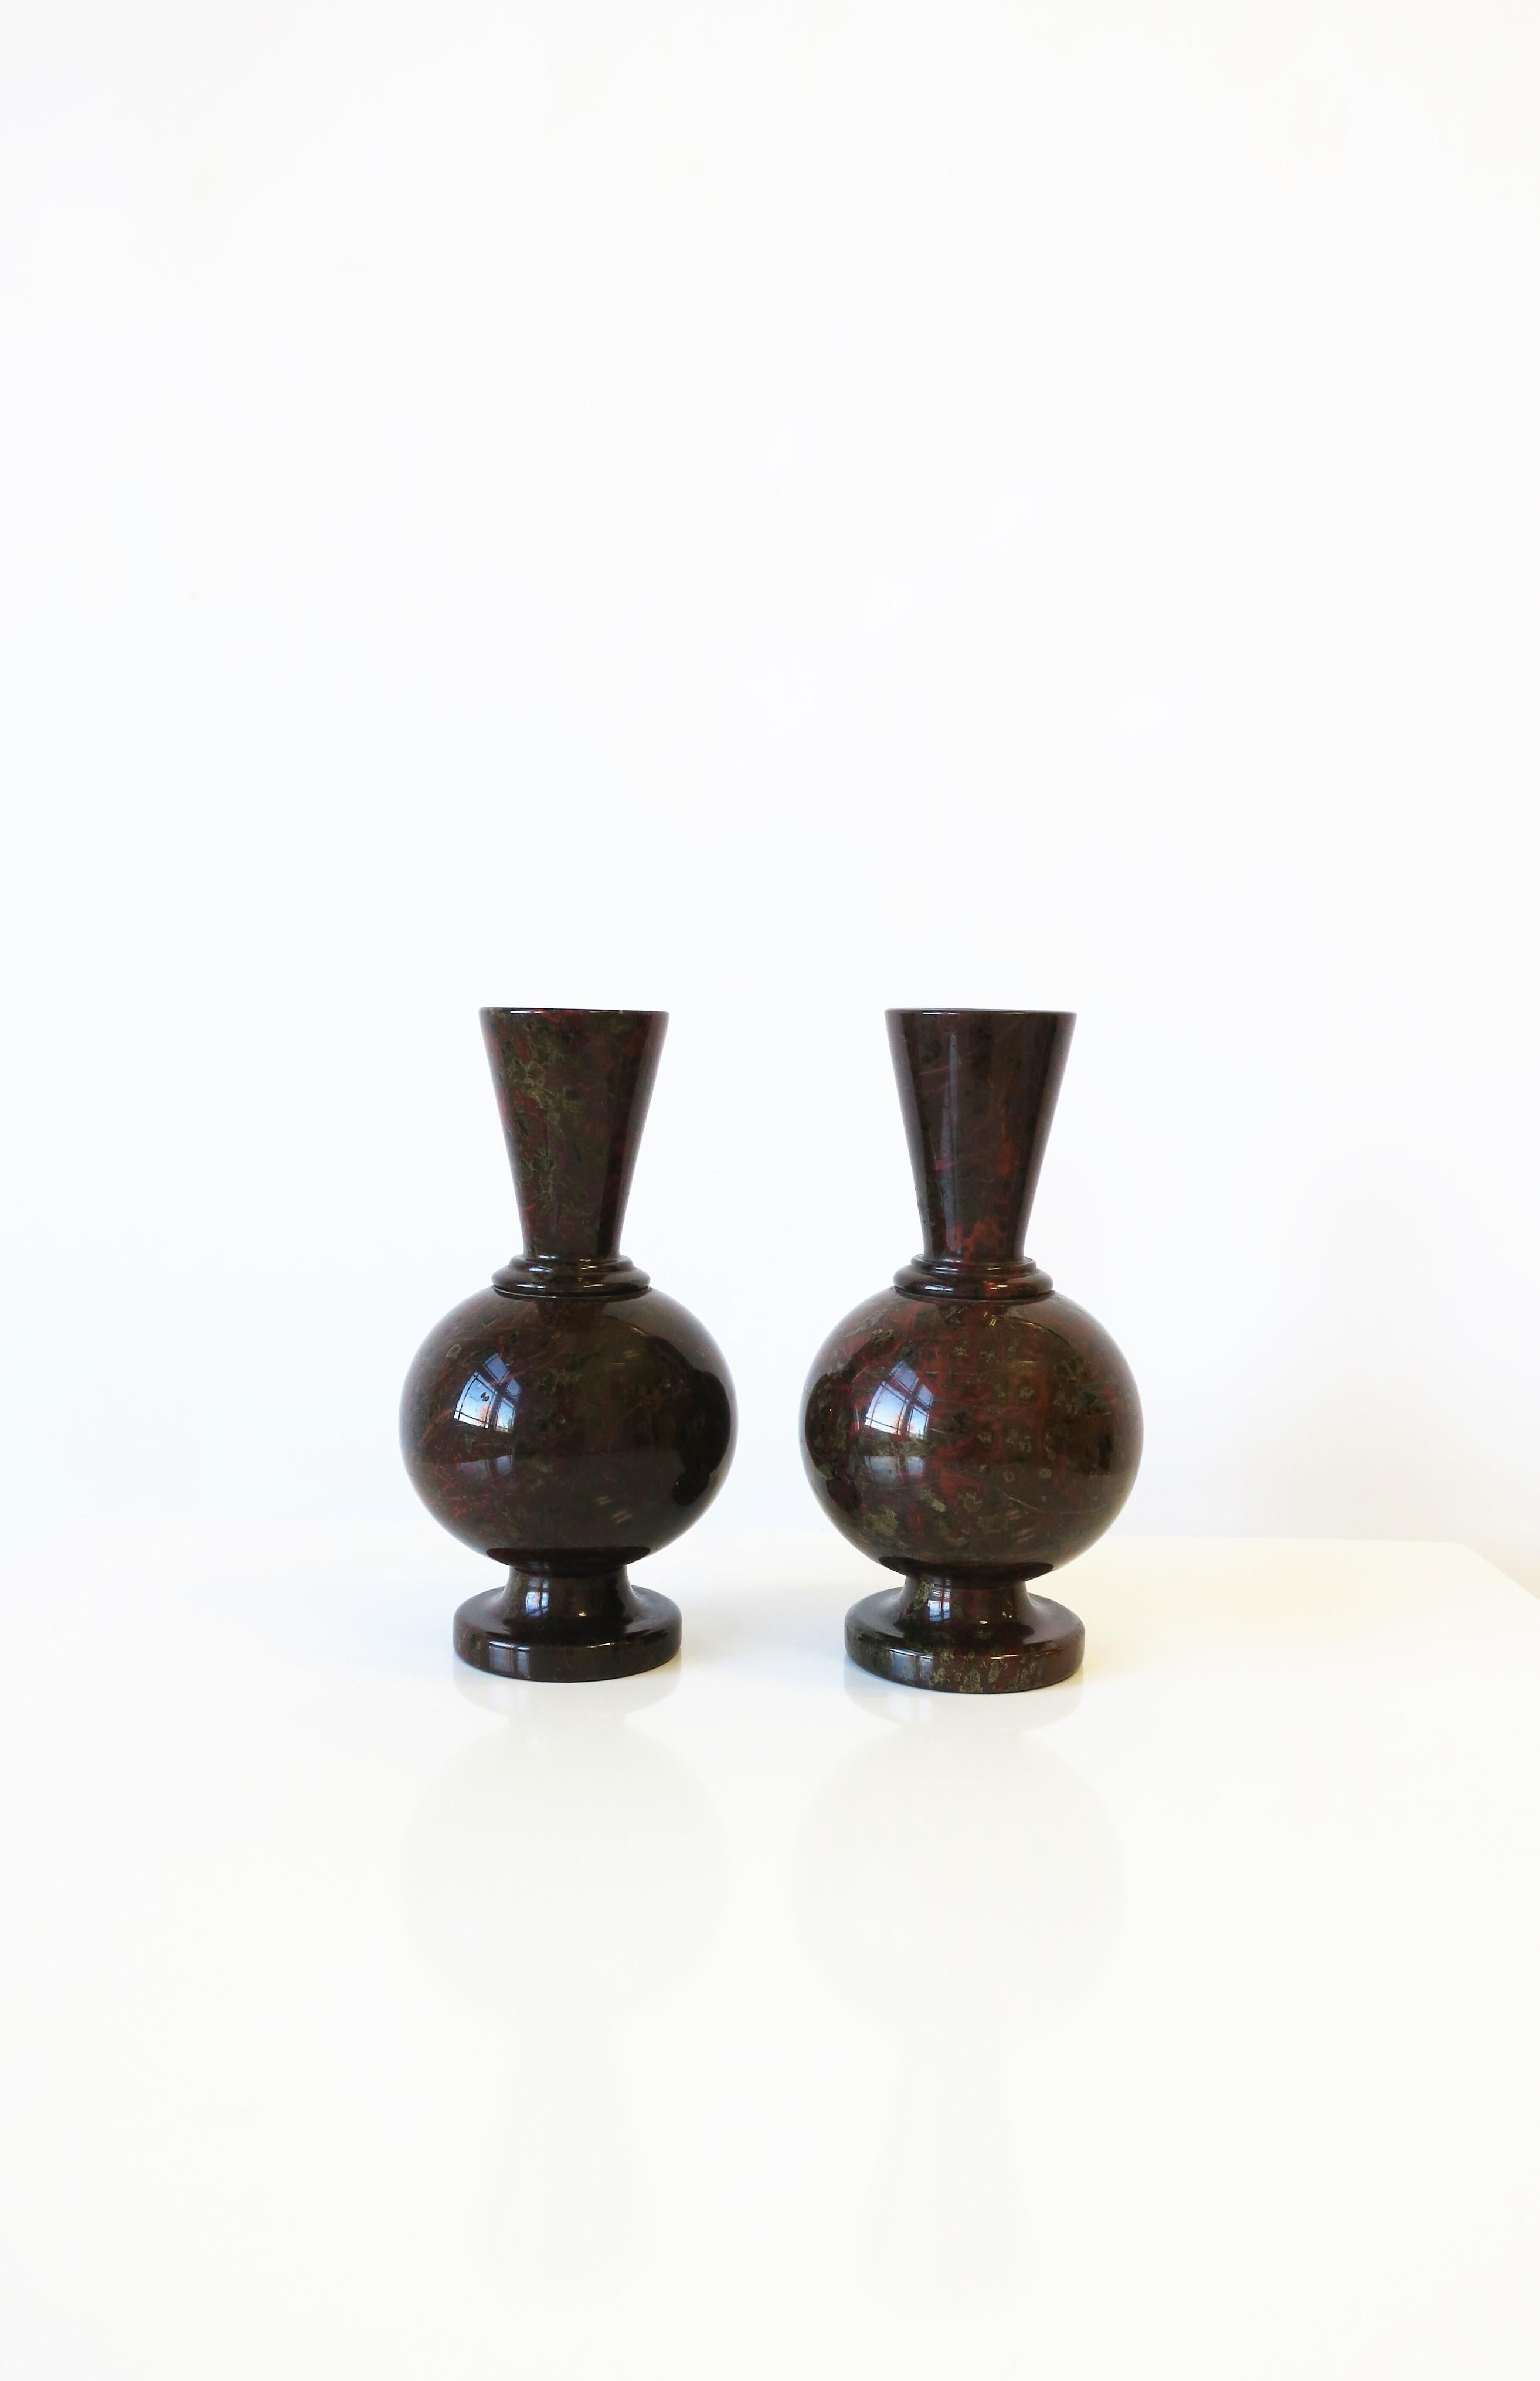 Une belle et riche paire de vases en pierre marbrière Art Déco moderne, vers le début du 20e siècle, France. La pierre de marbre est principalement d'un brun espresso foncé avec des nuances de brique rouge, de brun clair et de vert, polie et lisse.